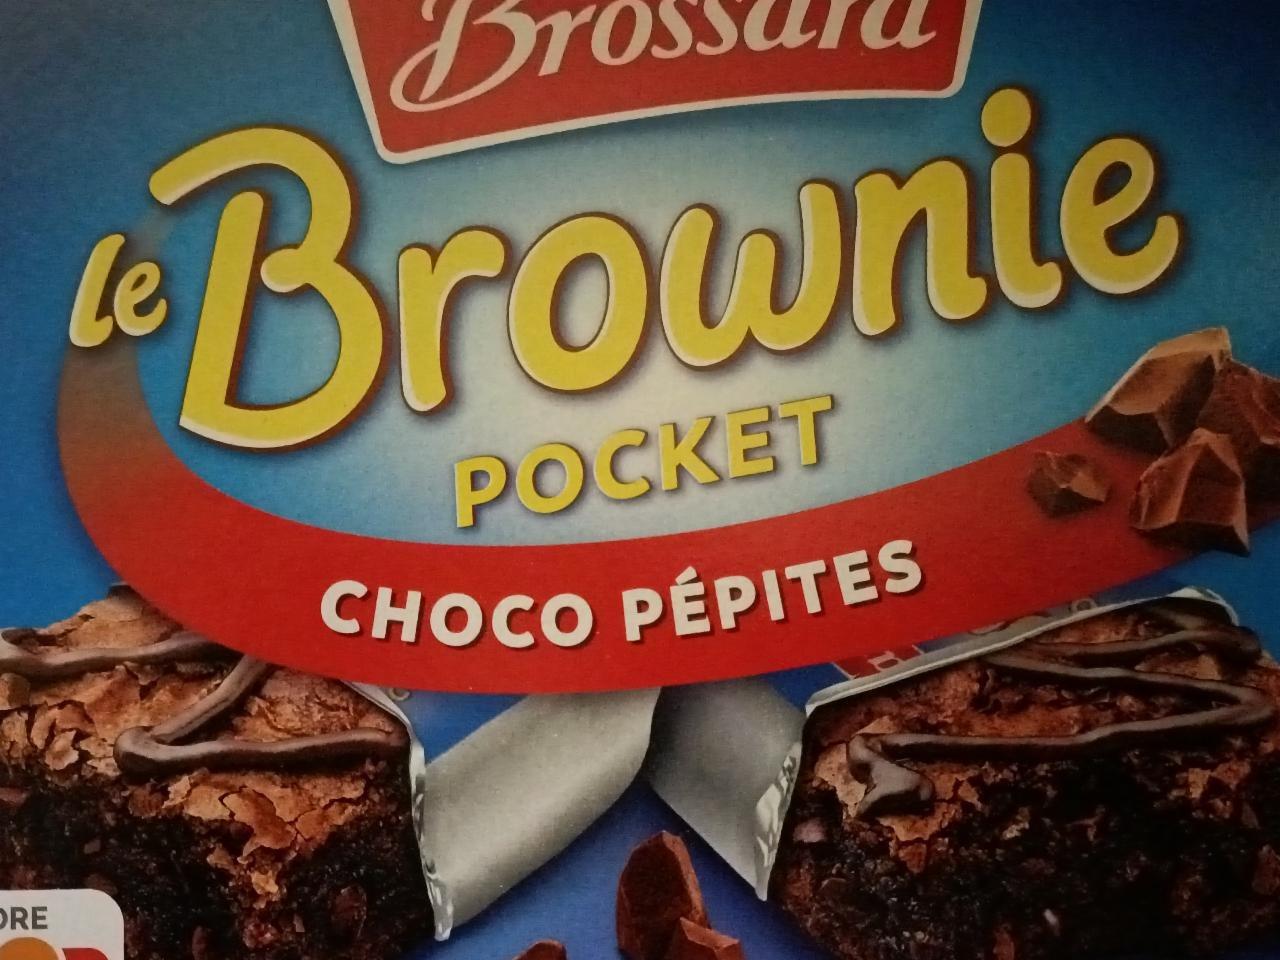 Zdjęcia - le Brownie pocket choco pépites Brossara